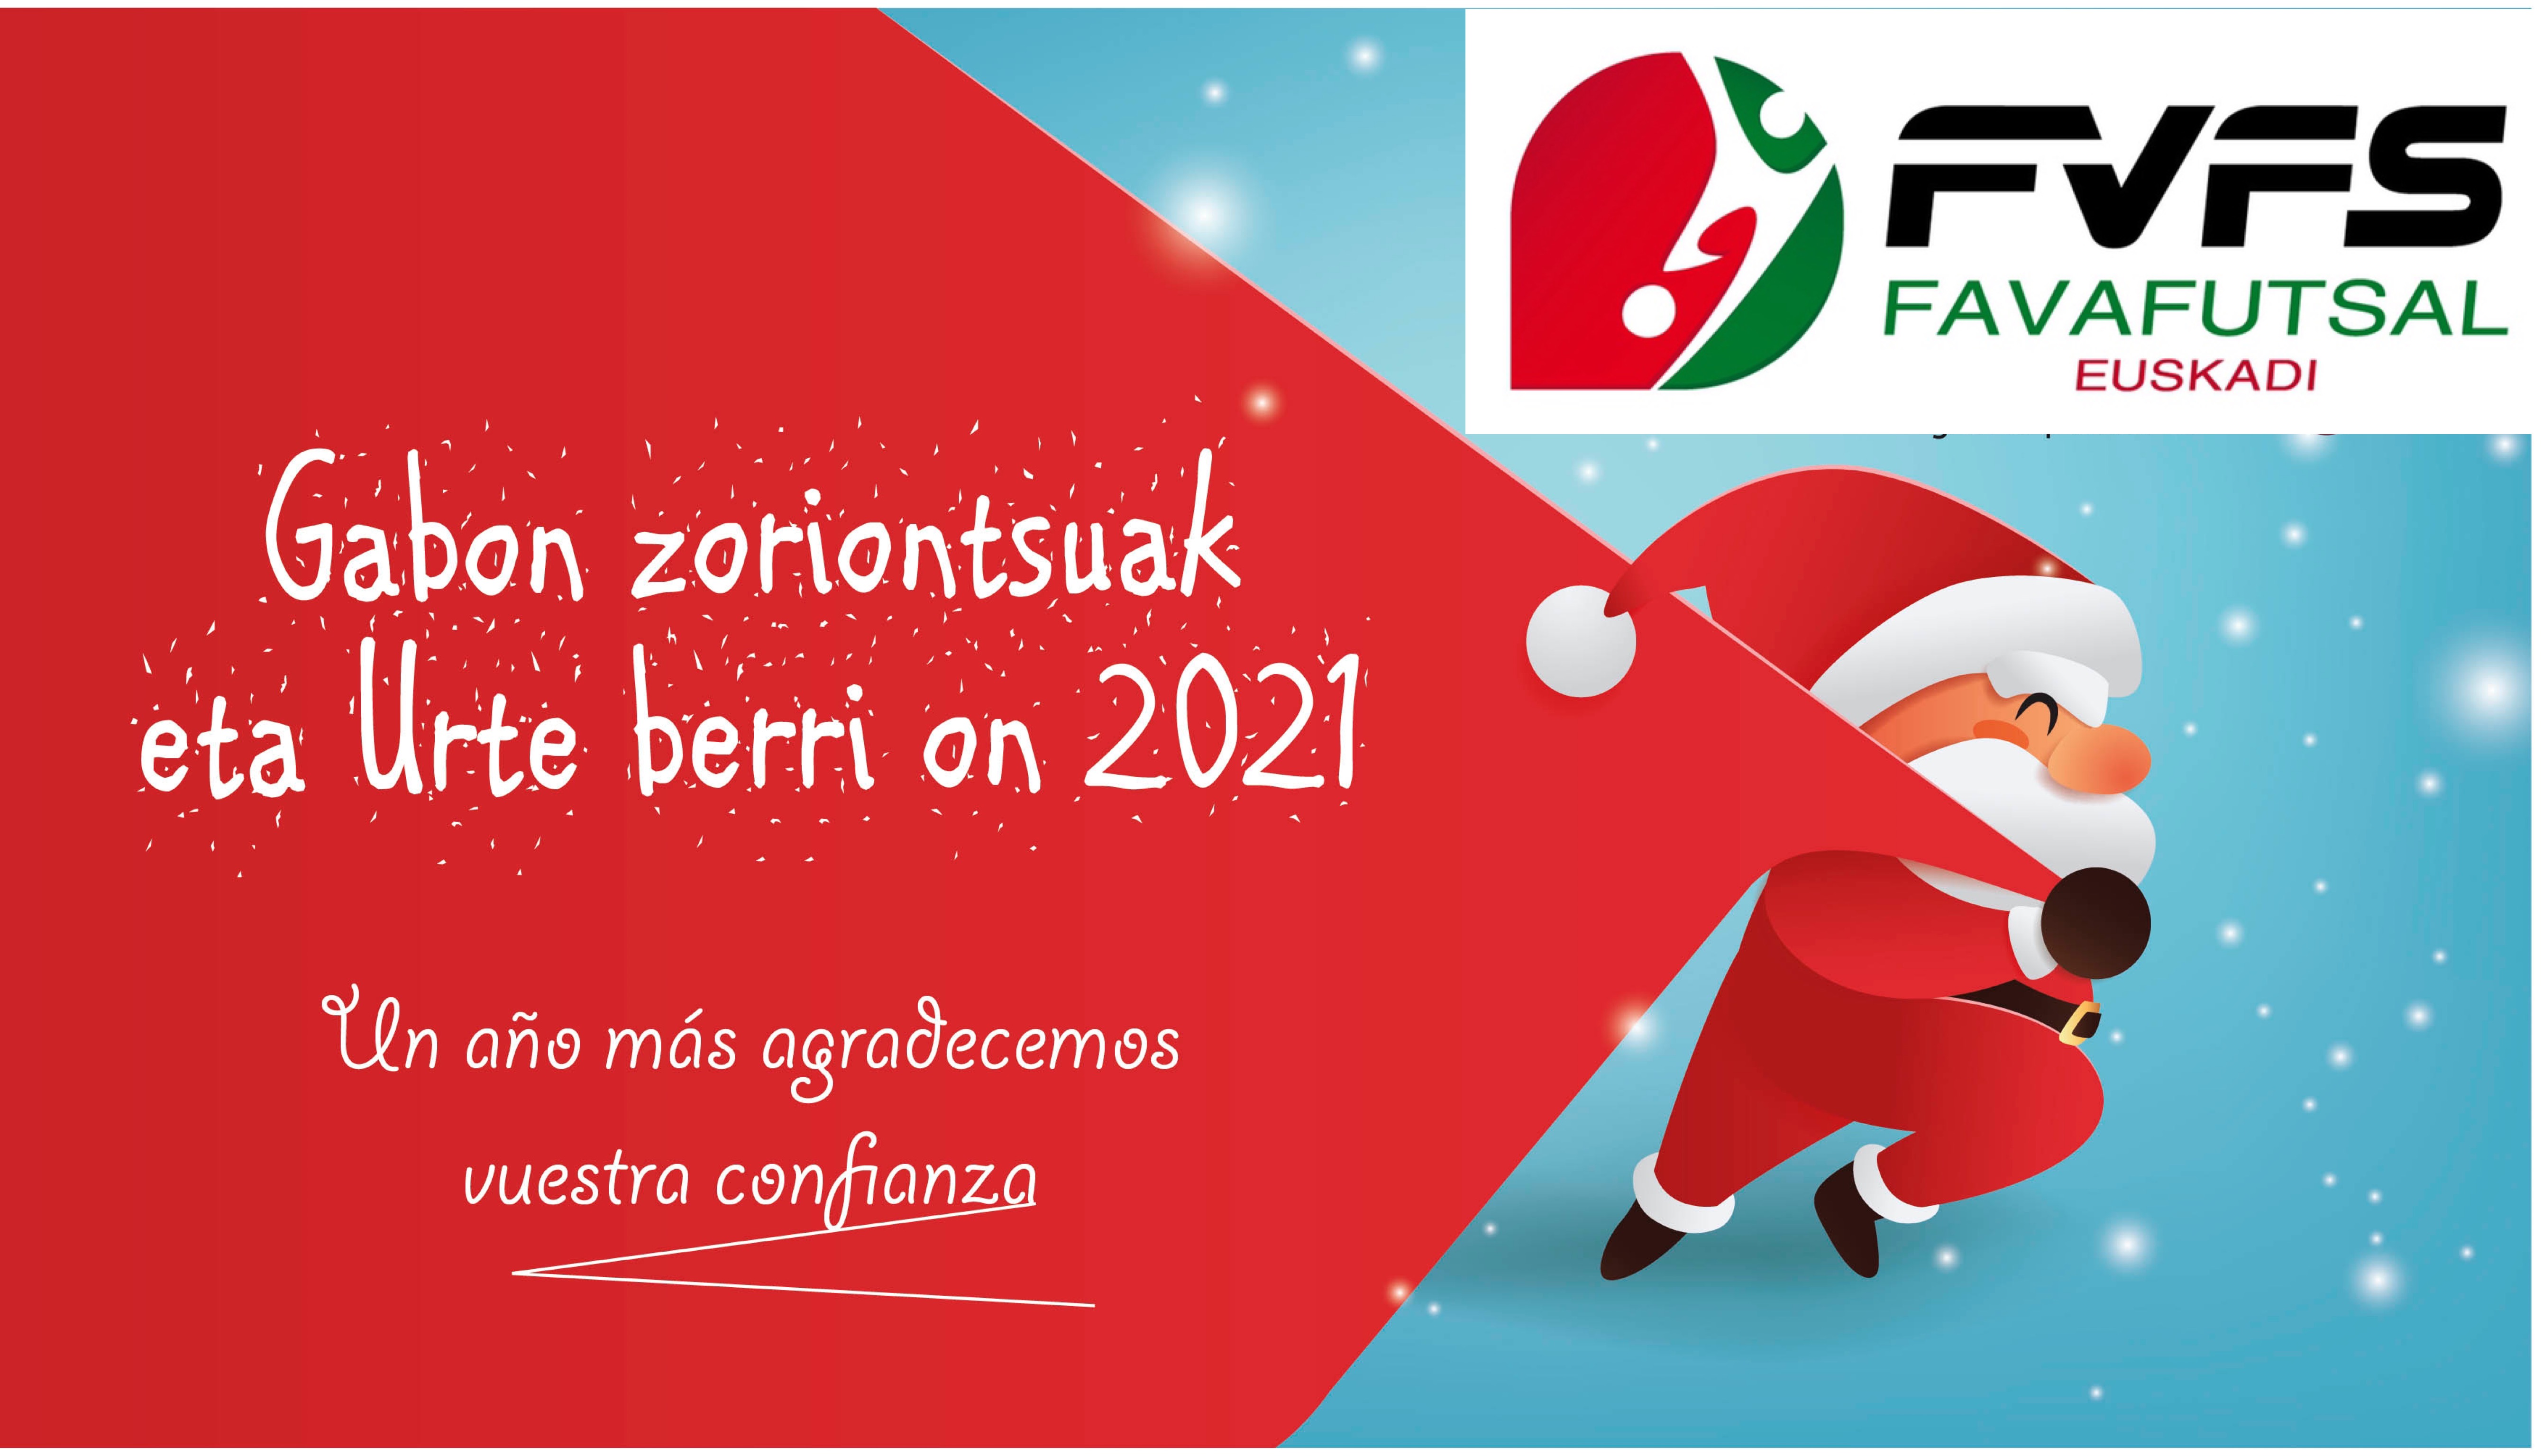 Favafutsal Euskadi os desea una Feliz Navidad.